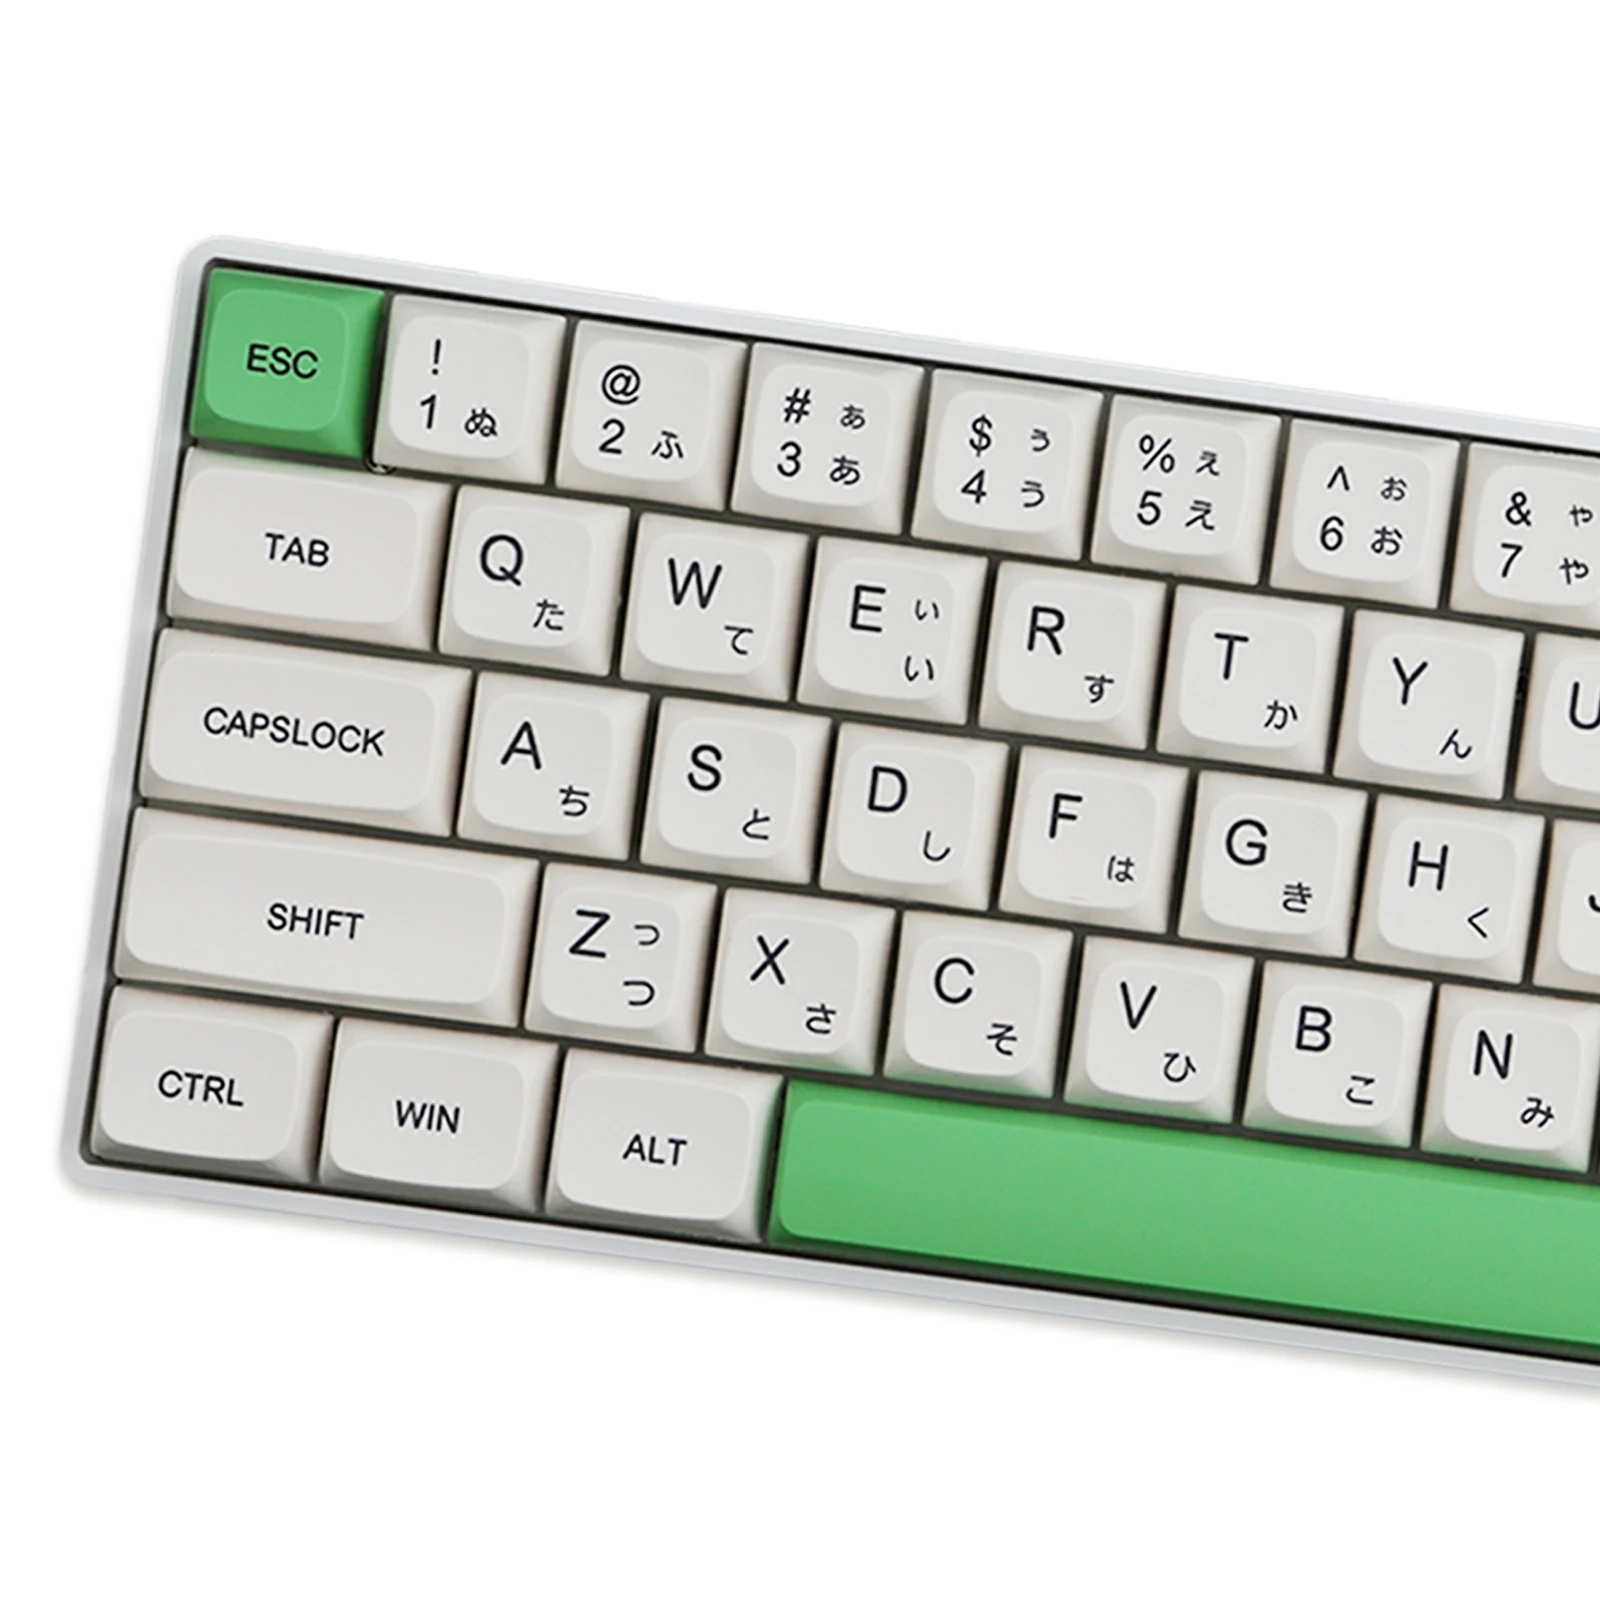 

Колпачки для клавиш PBT 137 клавиш XDA профильные колпачки для клавиш сублимационная японская колпачок для клавиш авокадо для переключателей ...